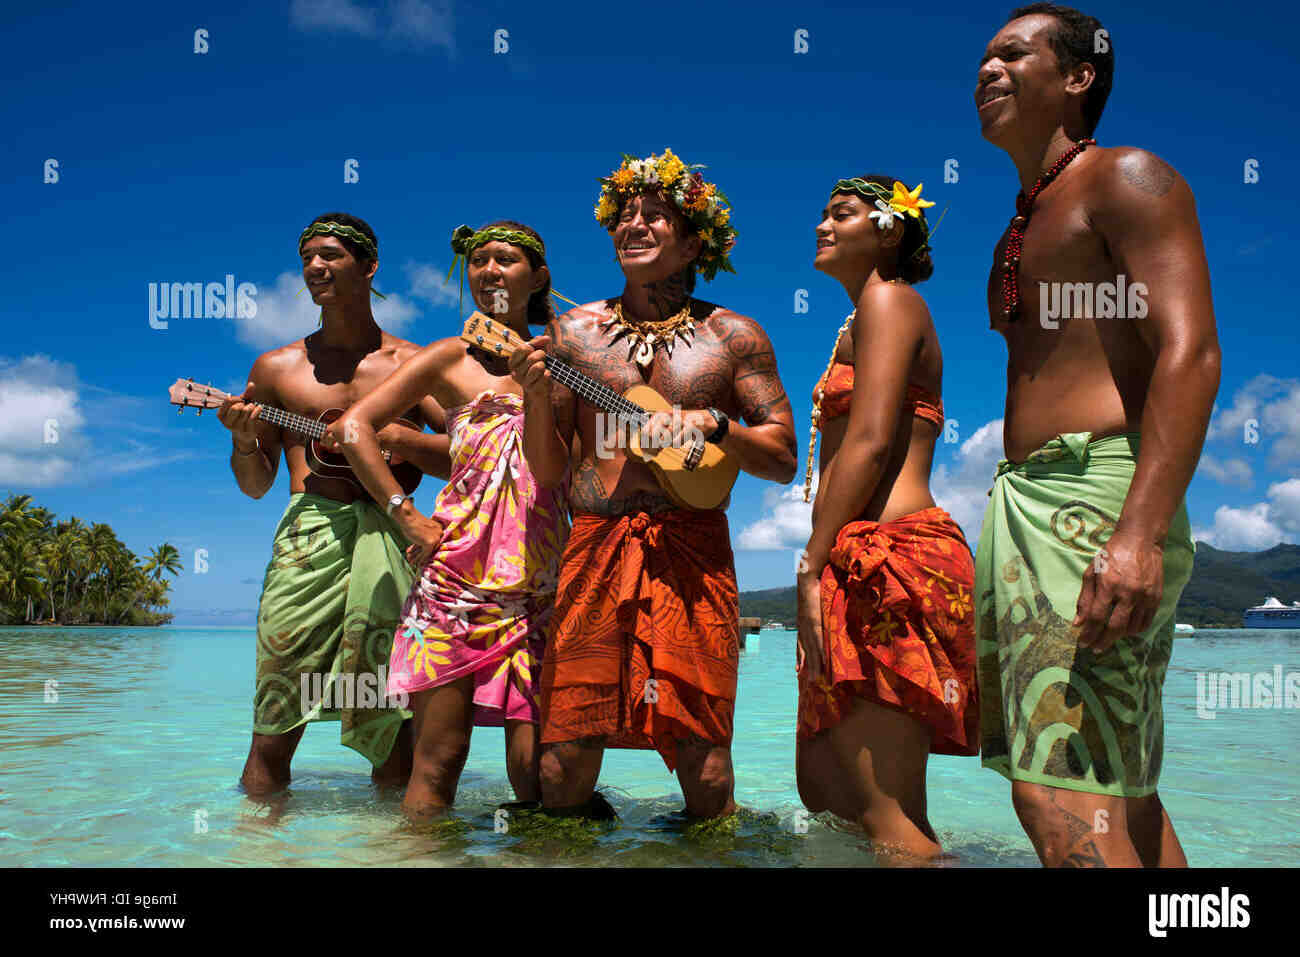 Como encontrar trabalho na Polinésia Francesa?